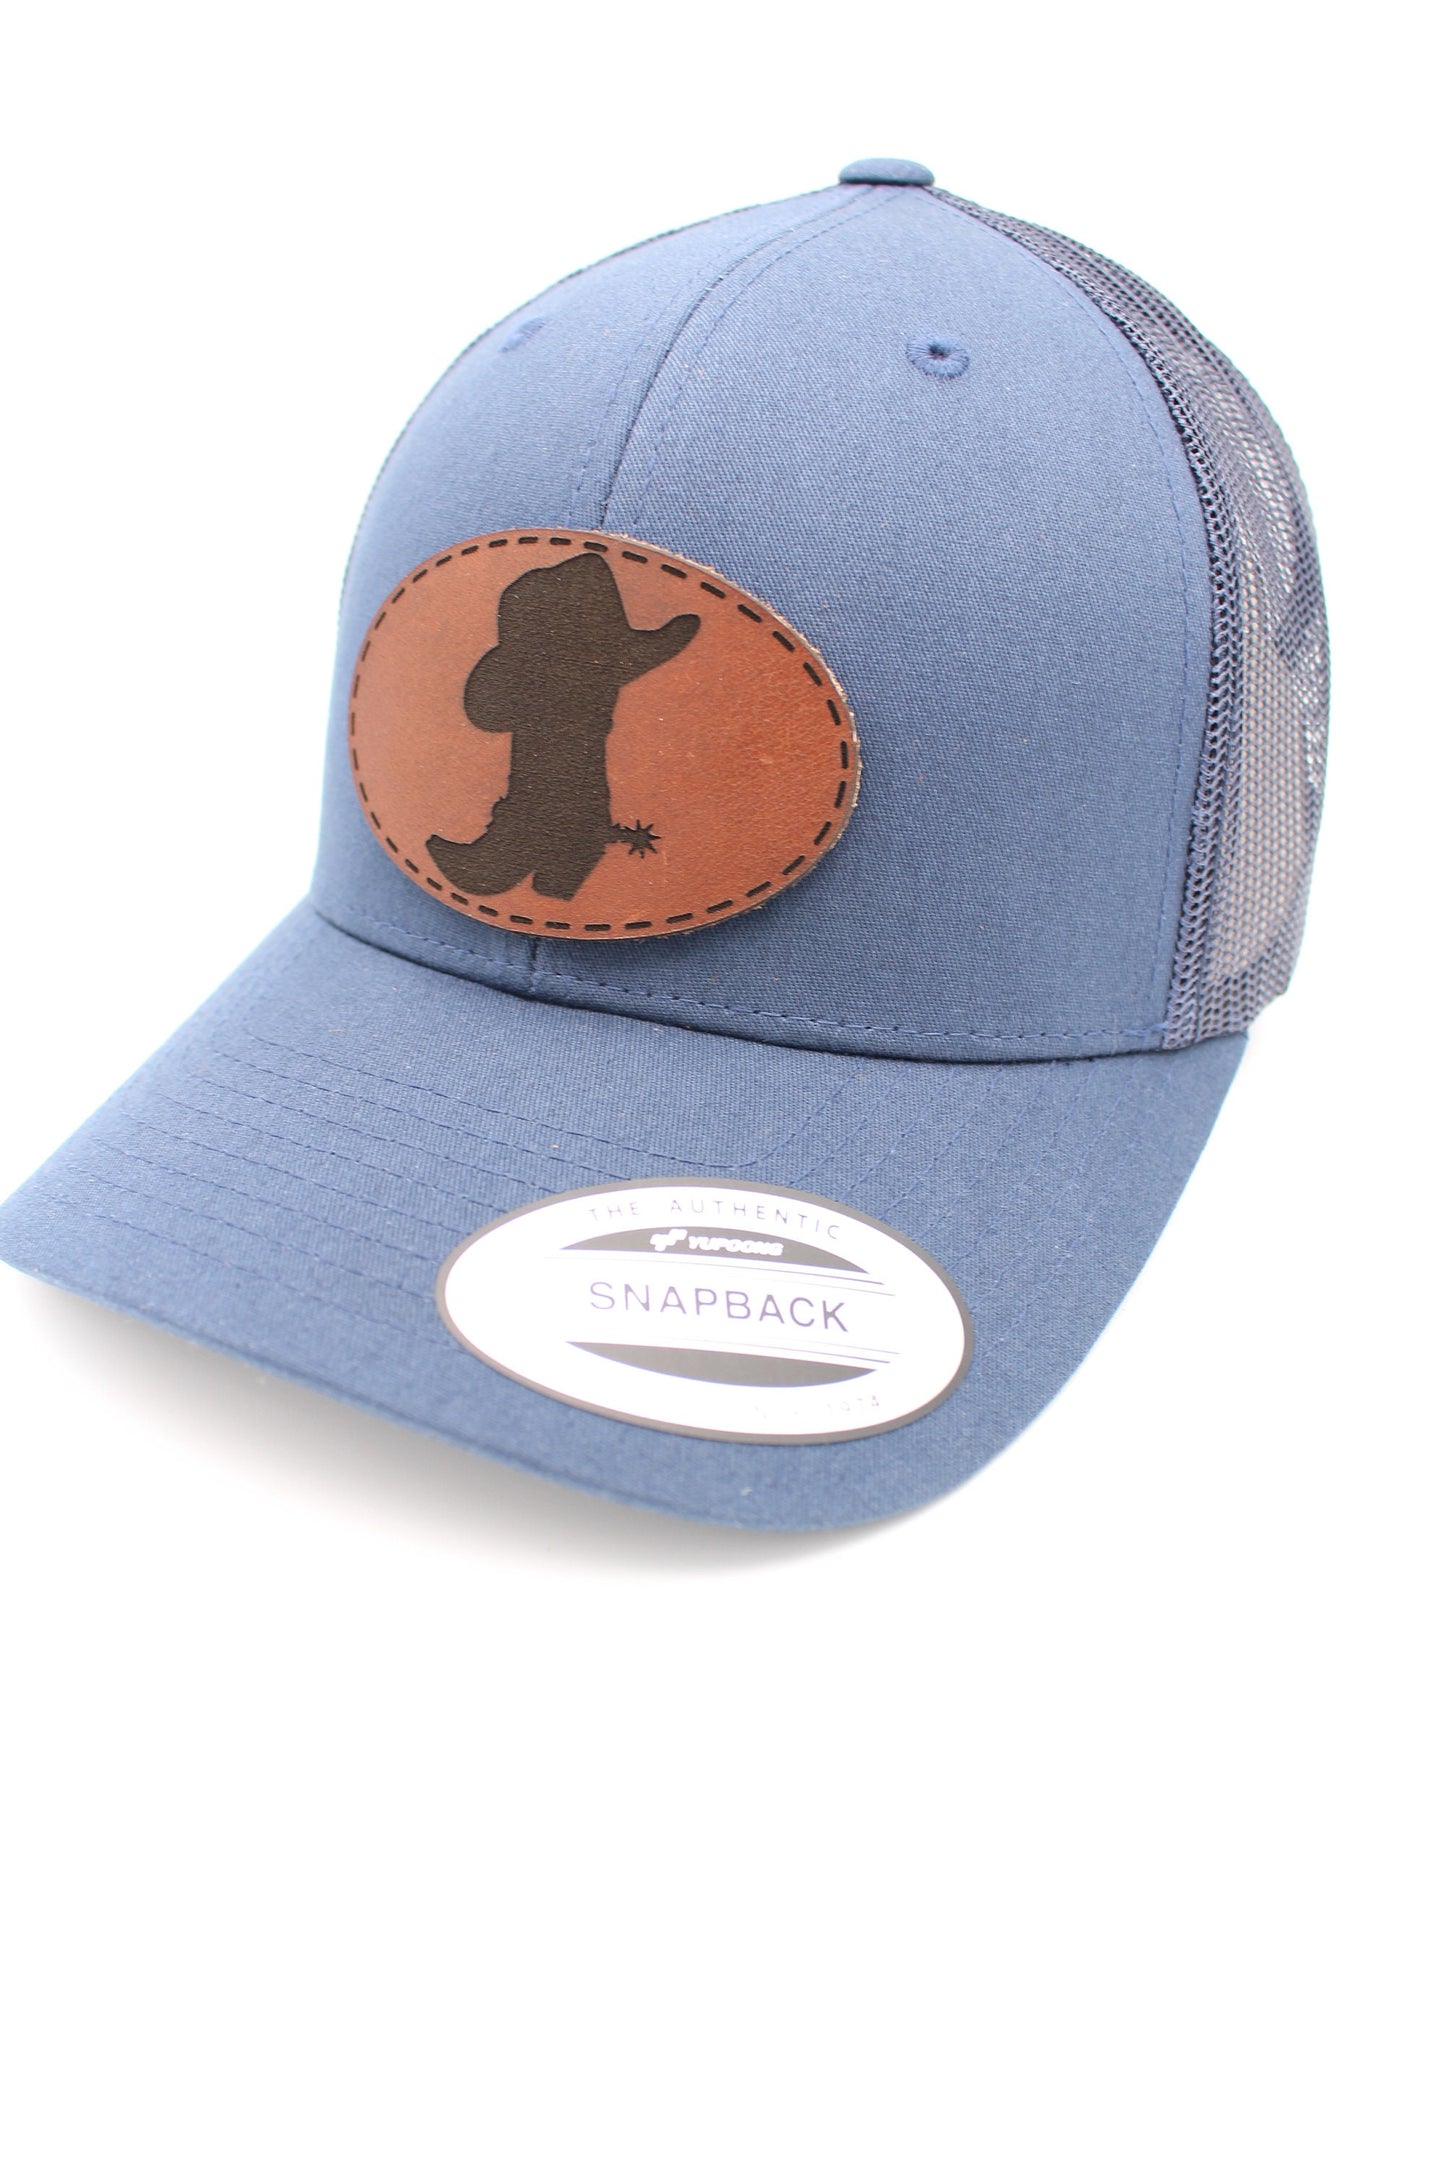 Cowboy Boots & Hat Trucker Hat | Cowboy Trucker Hat | USA Western Trucker Hat